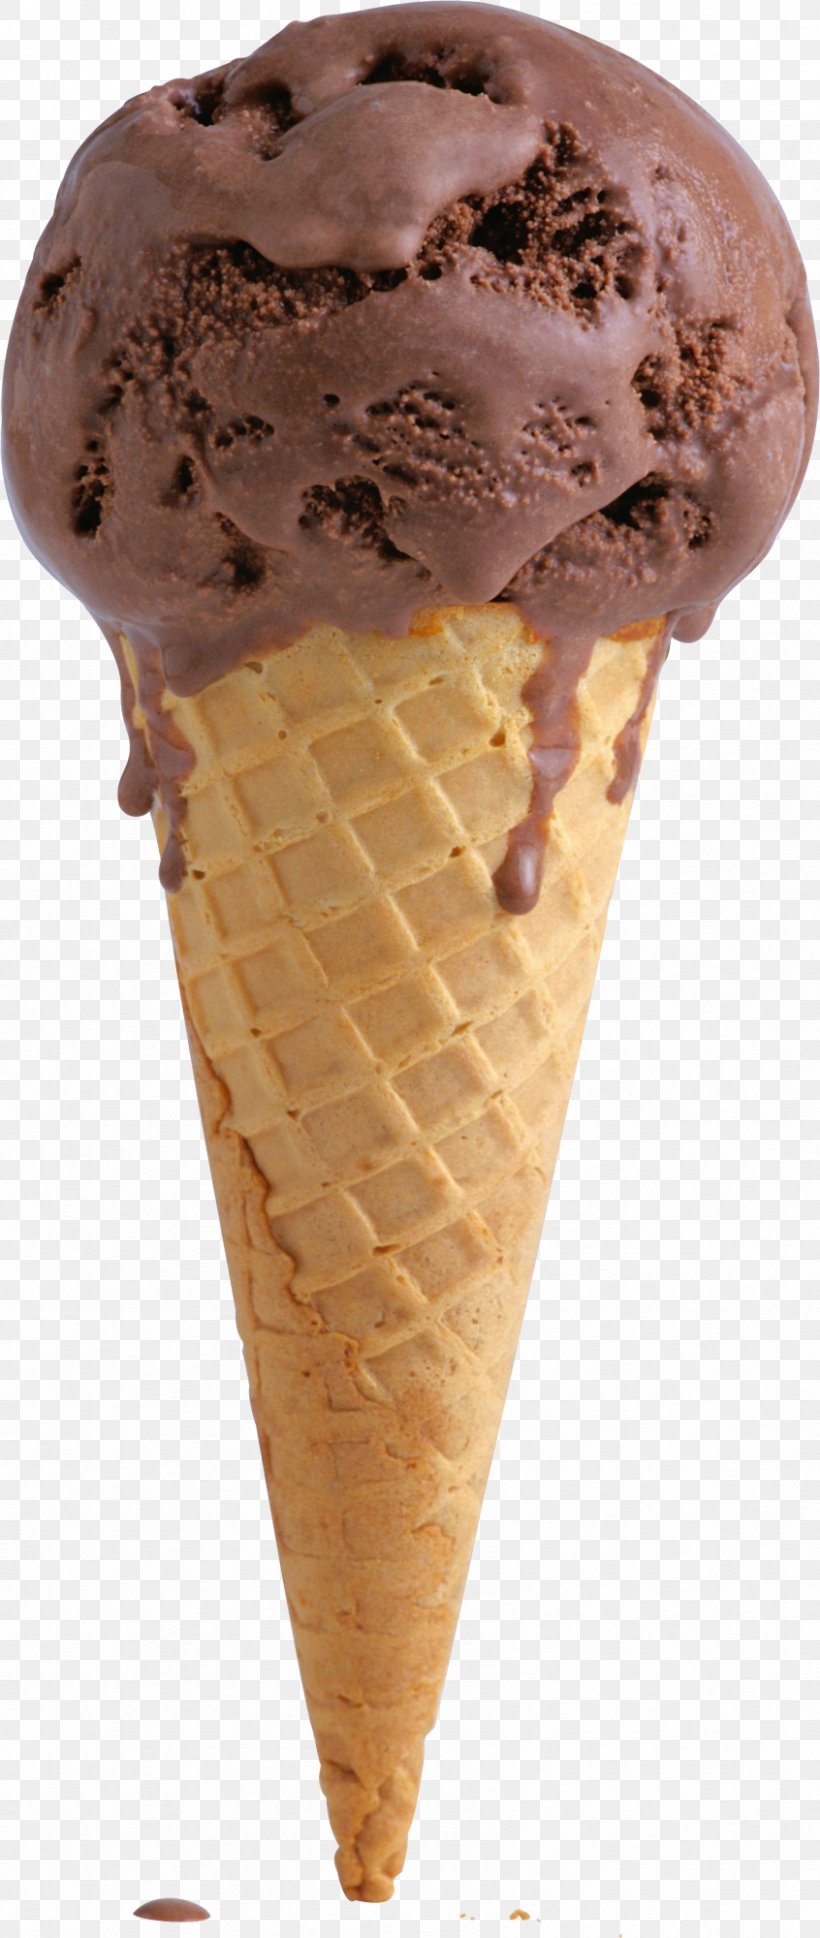 Ice Cream Cones Milkshake Chocolate Truffle Chocolate Ice Cream, PNG, 846x2000px, Ice Cream, Chocolate, Chocolate Ice Cream, Chocolate Truffle, Cream Download Free